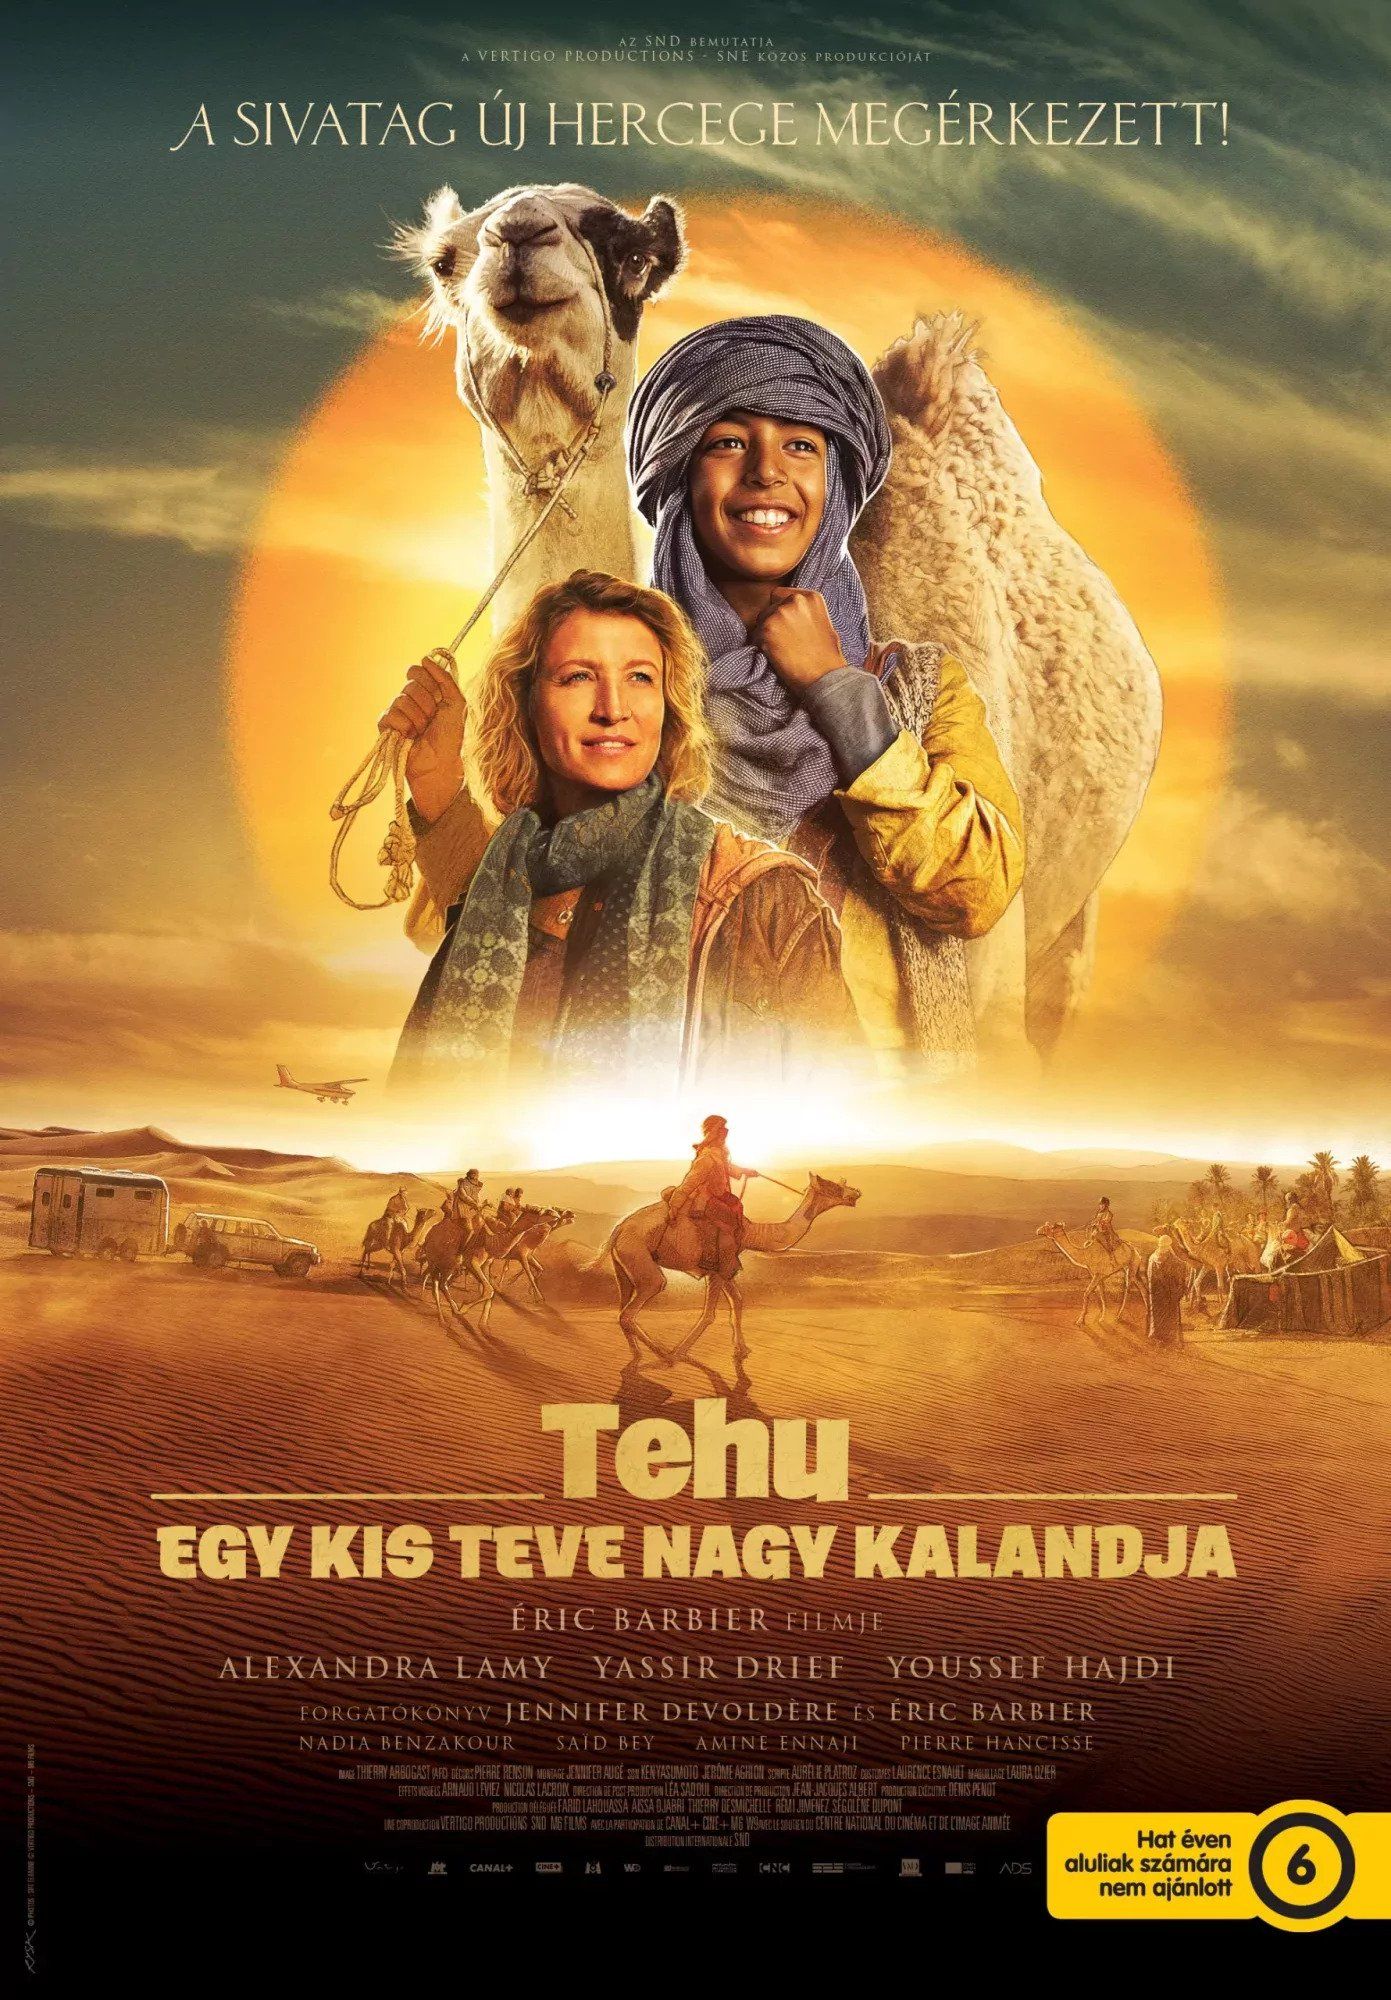 Tehu - Egy kis teve nagy kalandja online film